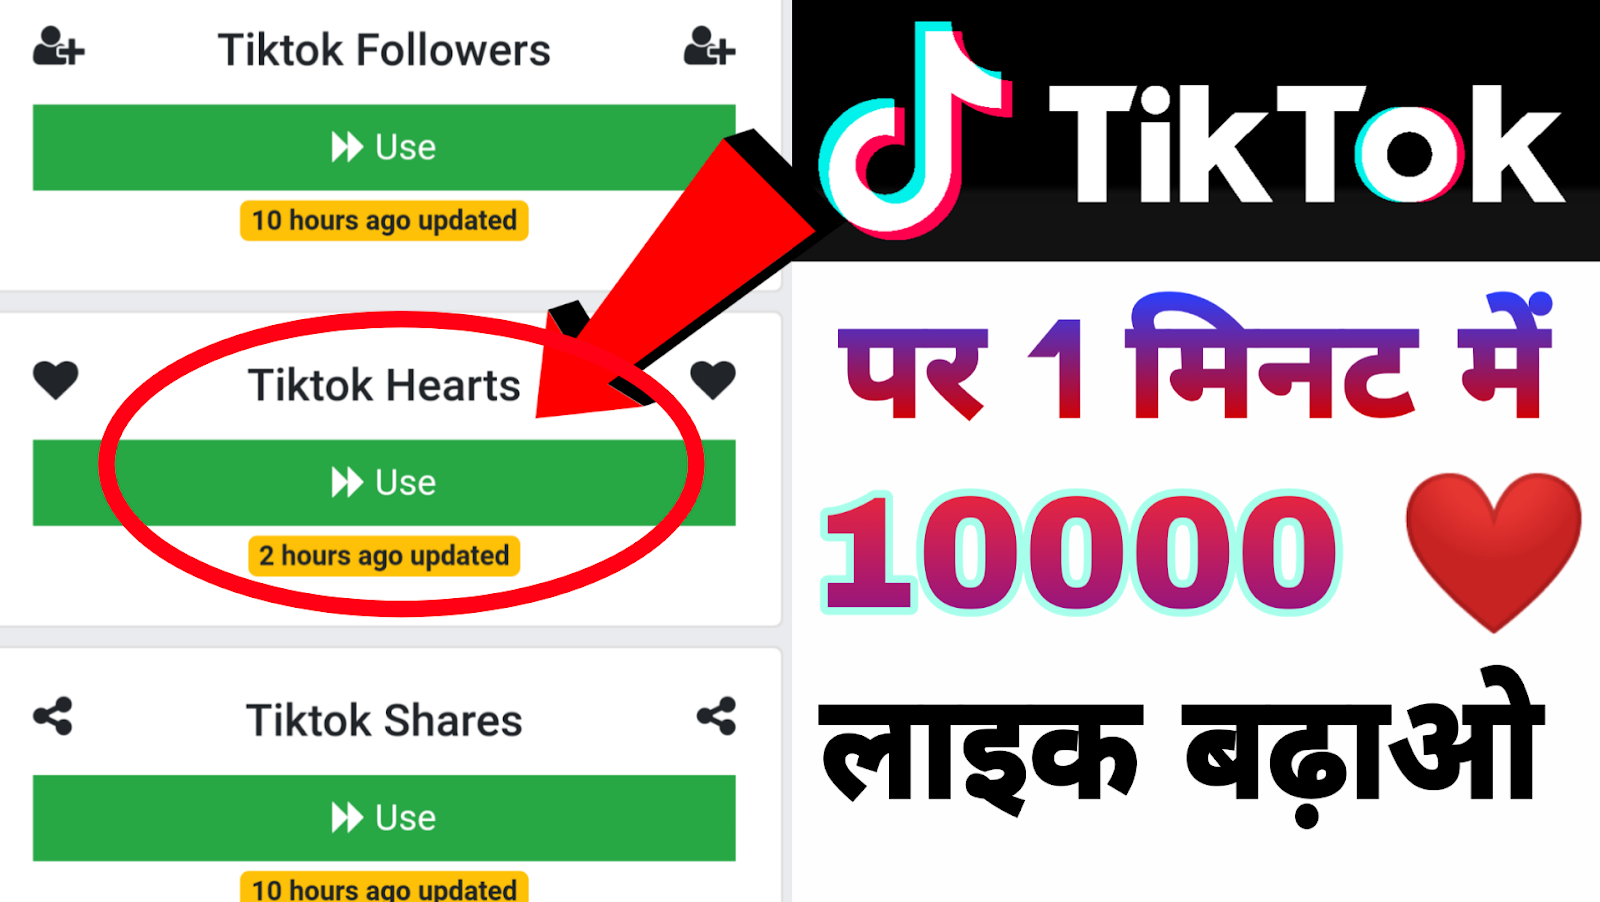 Tik tok hearts. Tik Tok Followers. Tik Tok кликер. Tik Followers.com. Heart tik Tok.